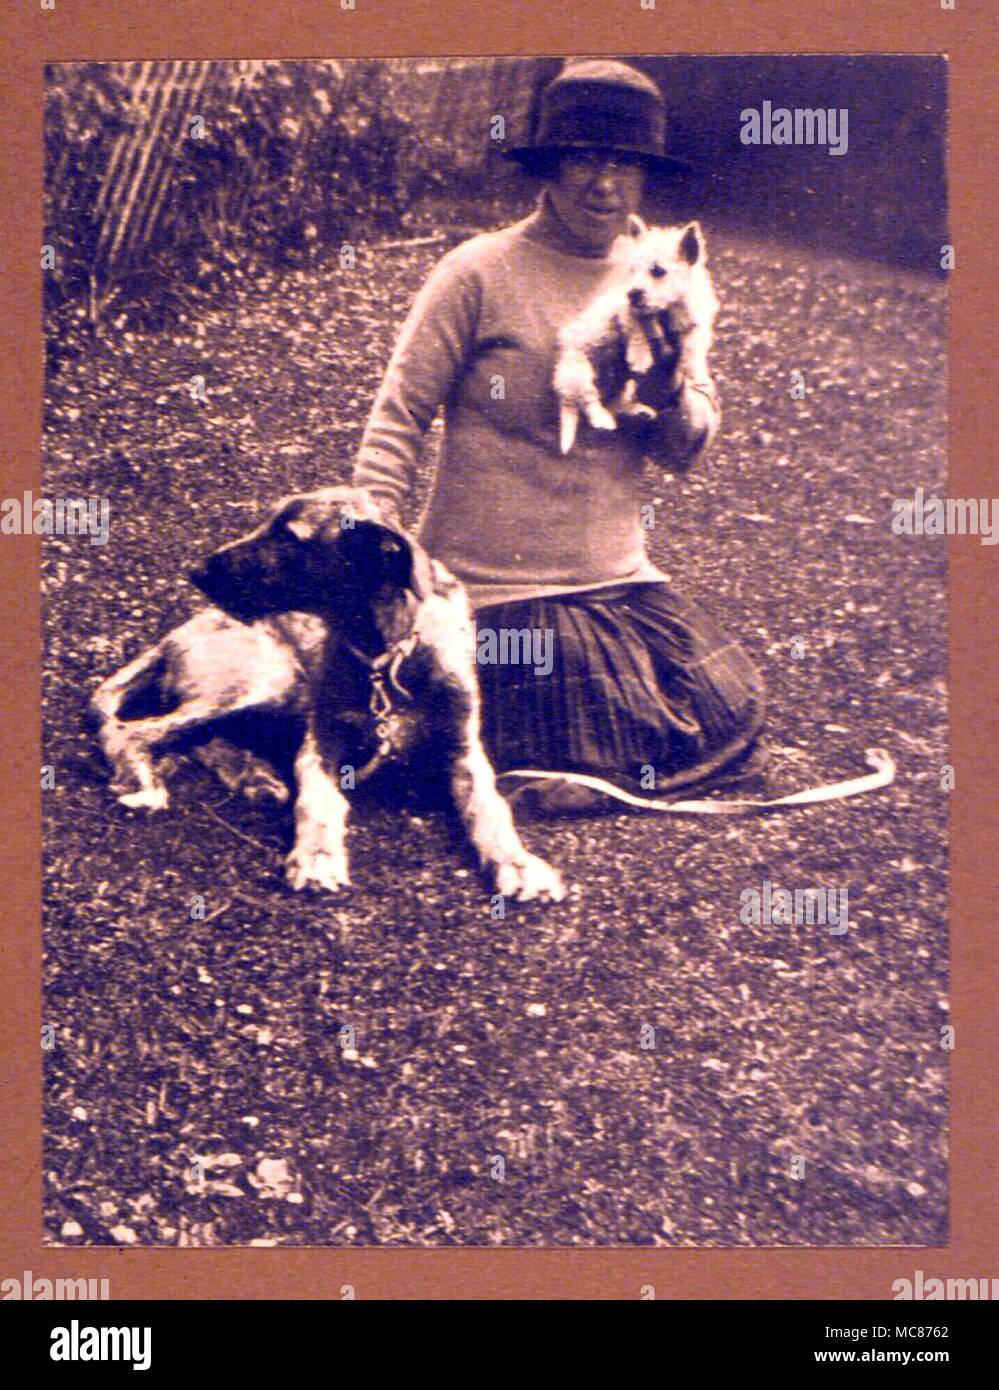 Merkwürdige Phänomene Foto der Wolfshund von Lady Hehir, und die carn Welpe, Kathal, in Bezug auf ein seltsames Bild im September getroffen, 1926 von Frau Filson Stockfoto